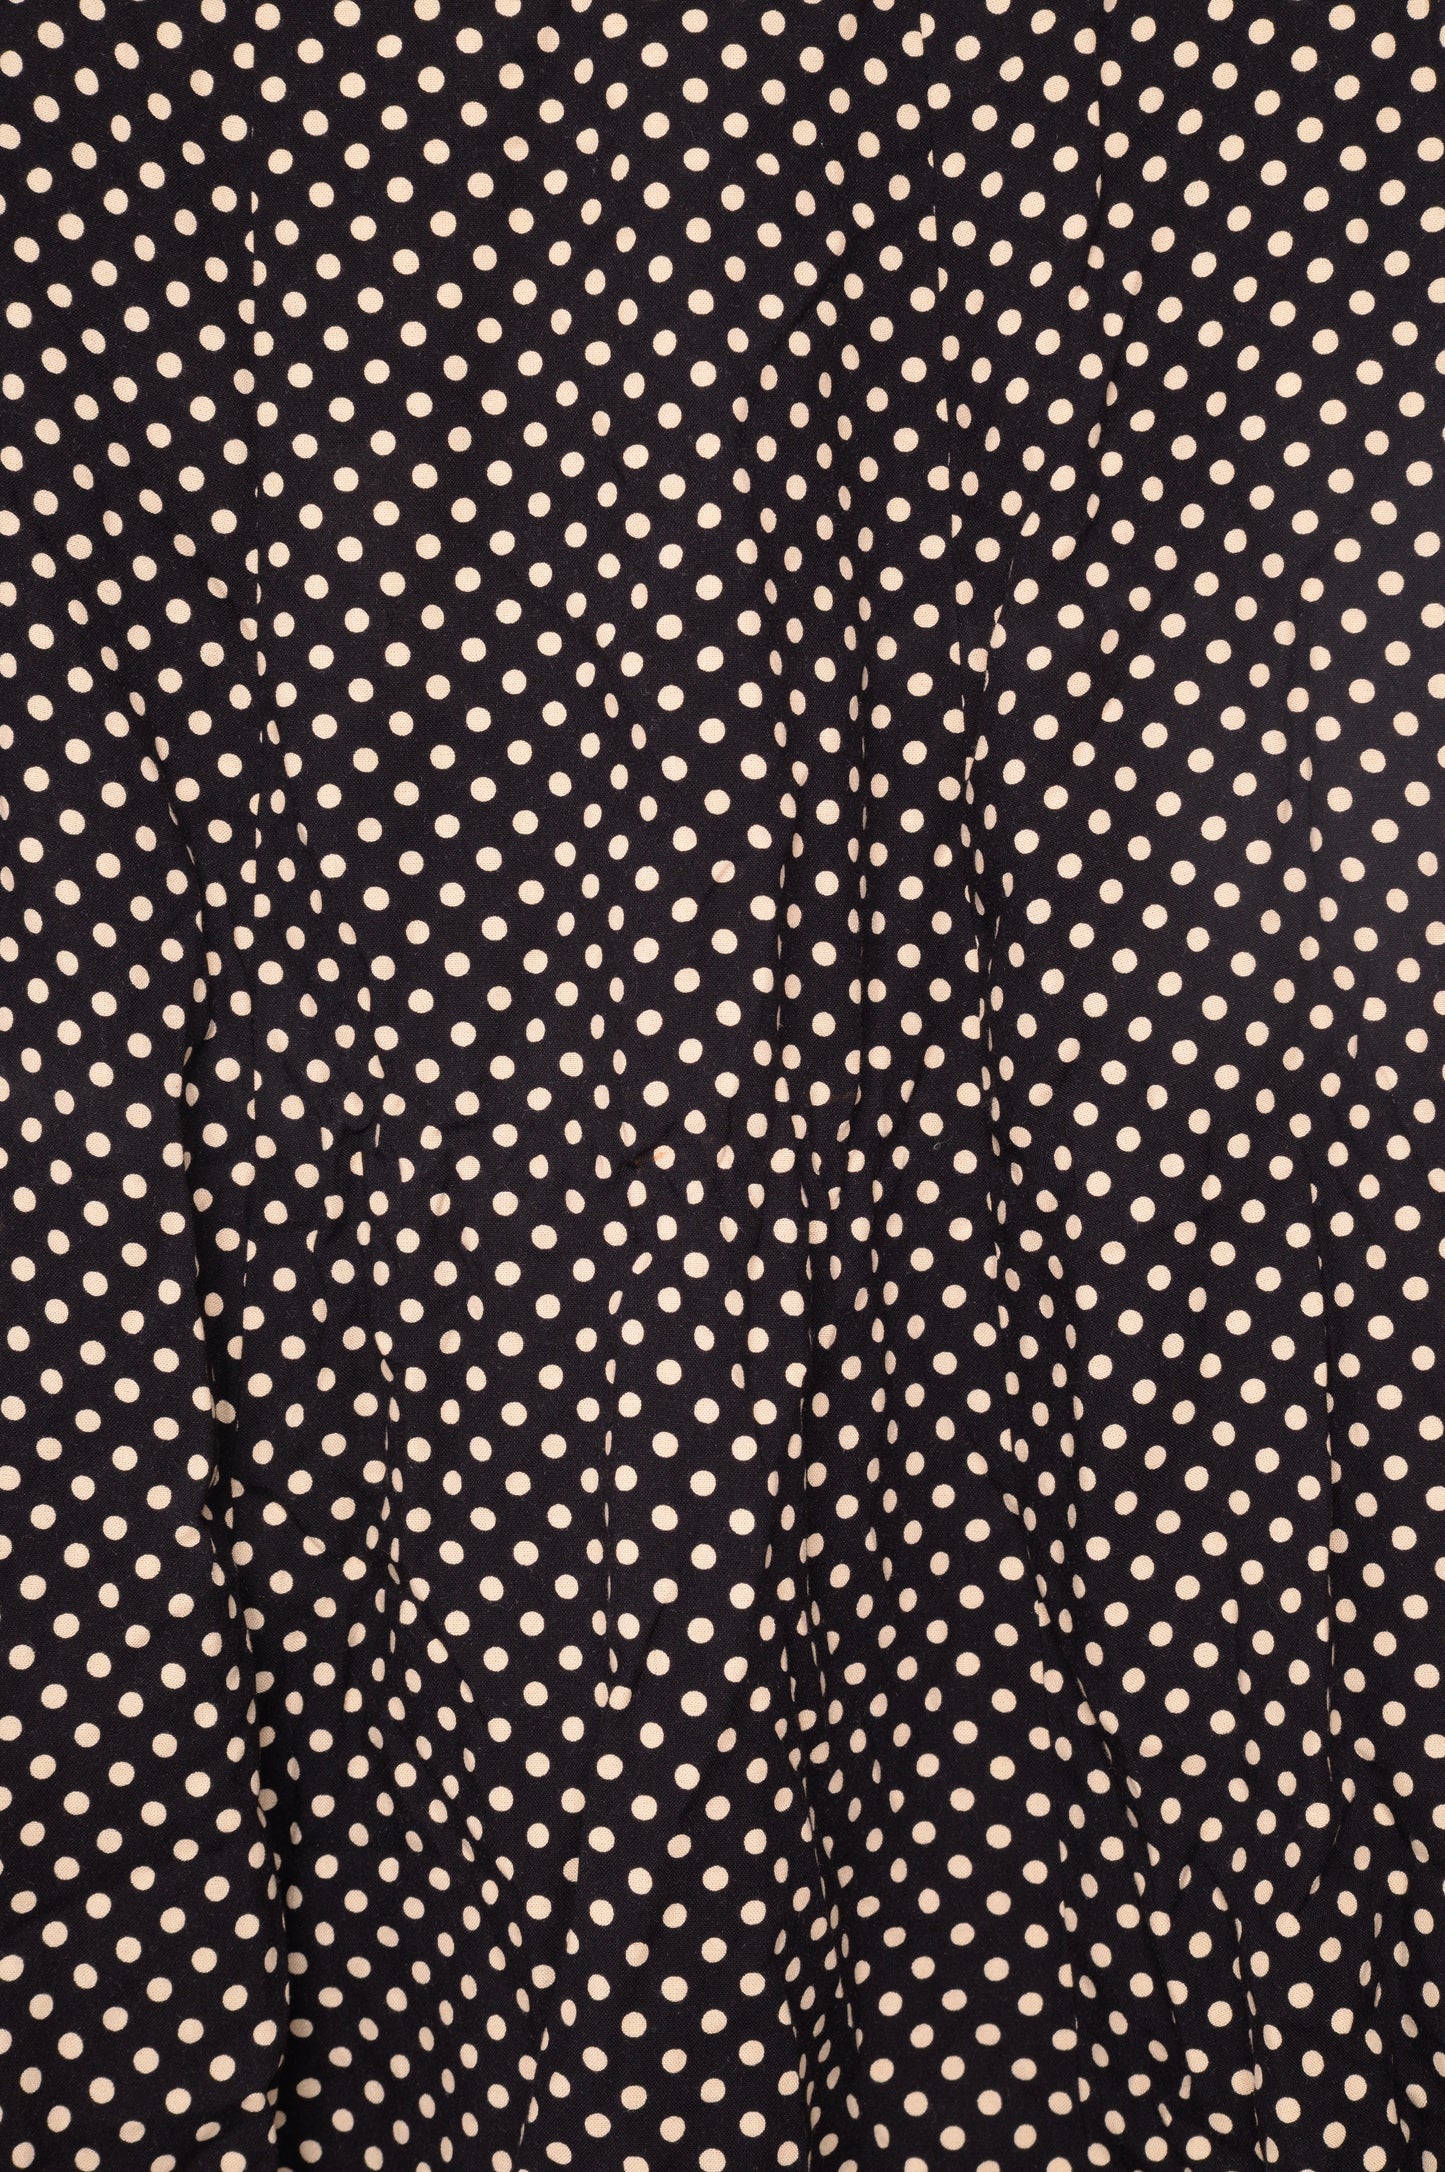 1960s Polka Dot Pleated Skirt